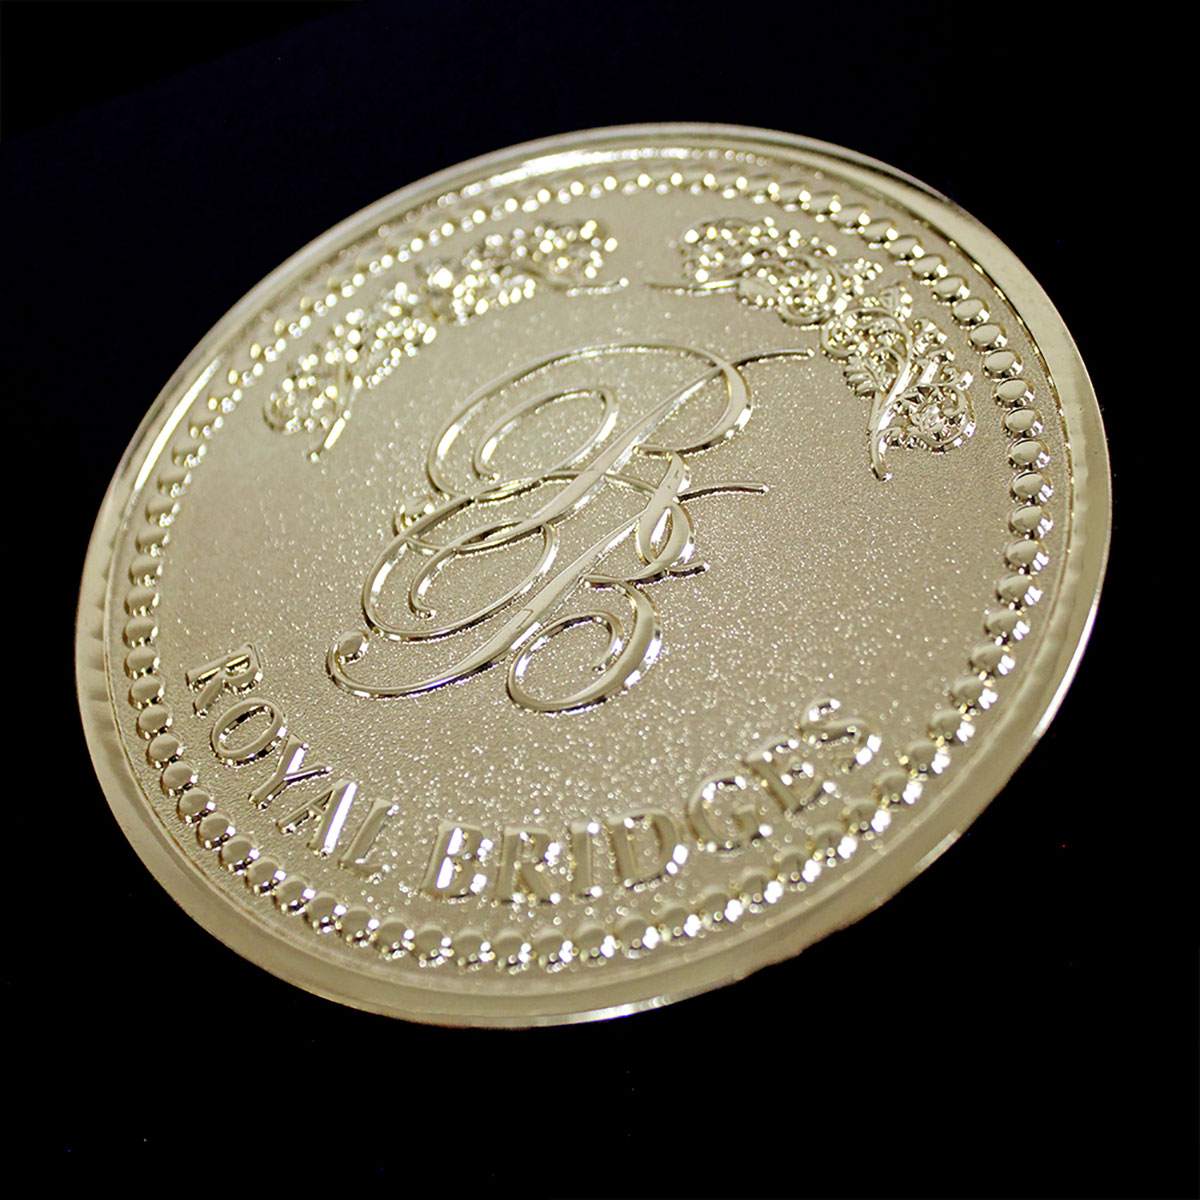 custom made commemorative coins